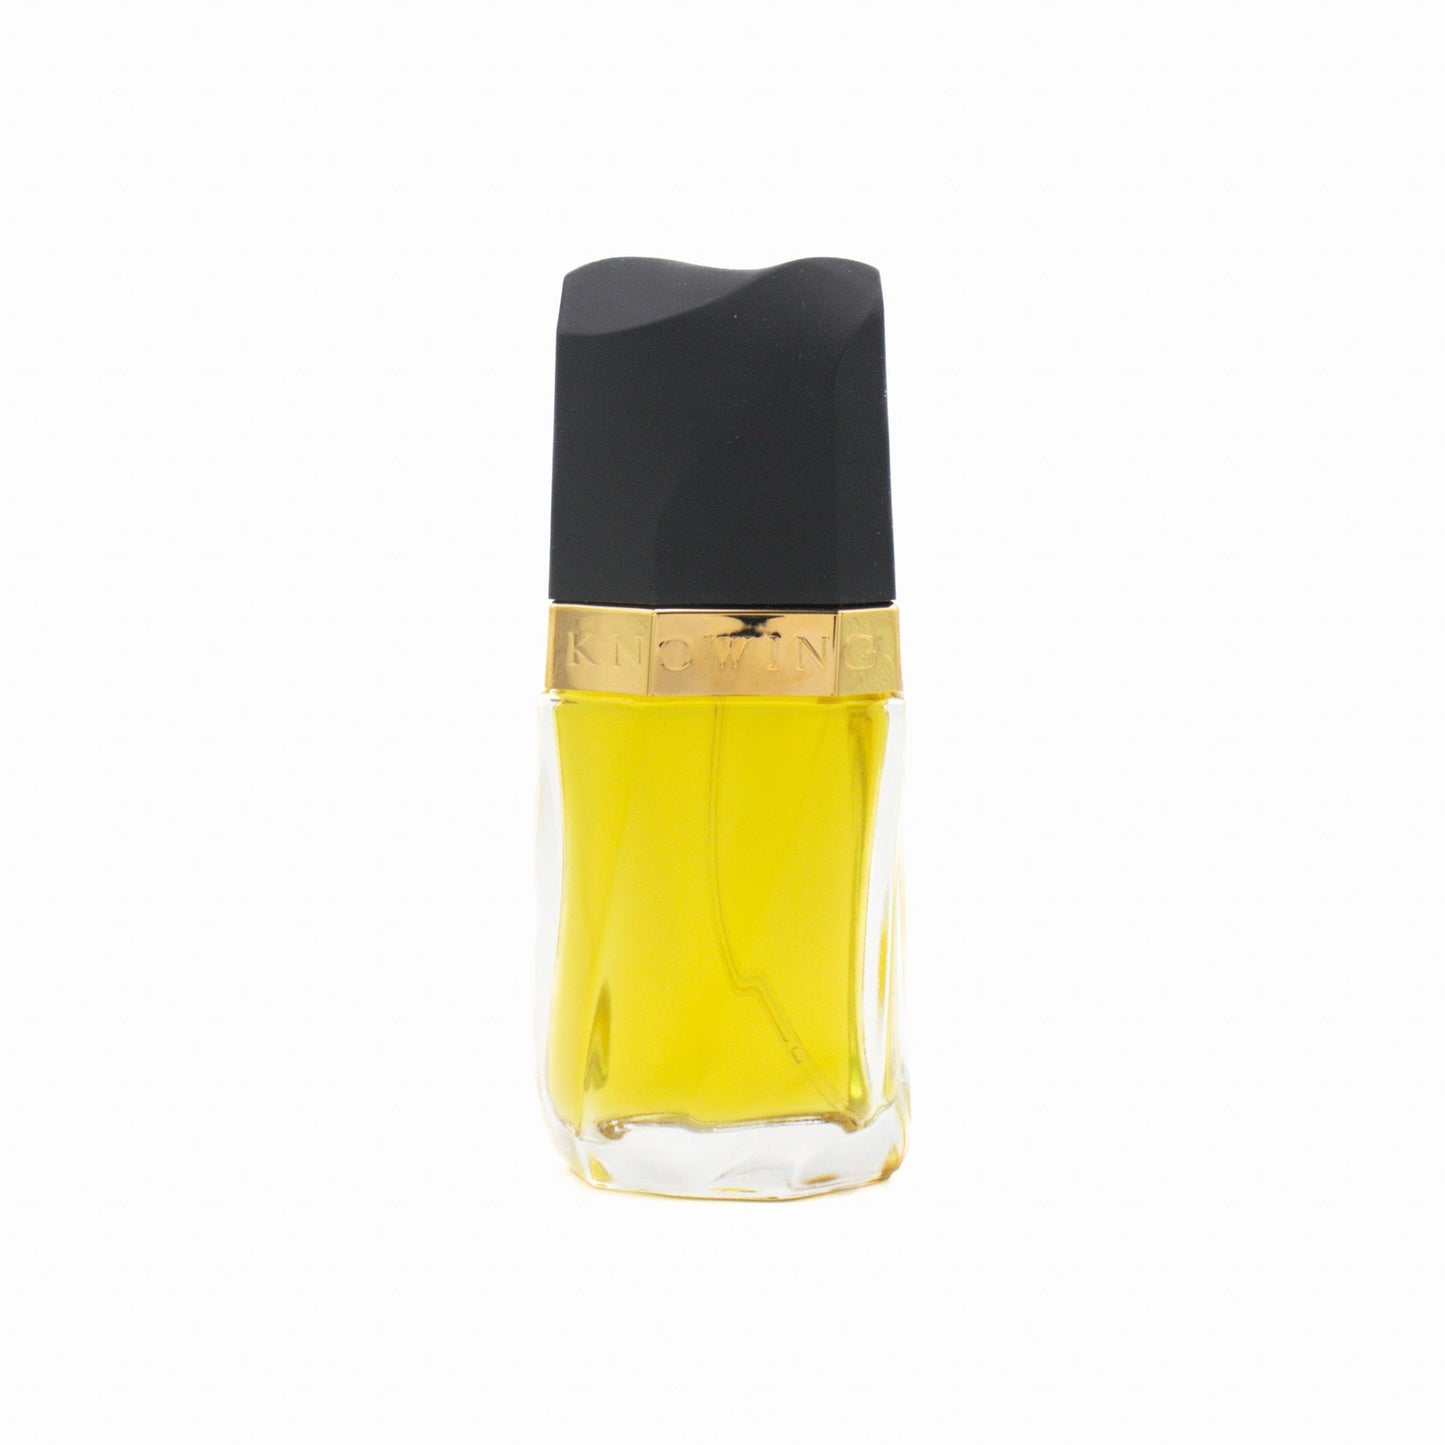 Estee Lauder Knowing Eau de Parfum 75ml - Imperfect Box